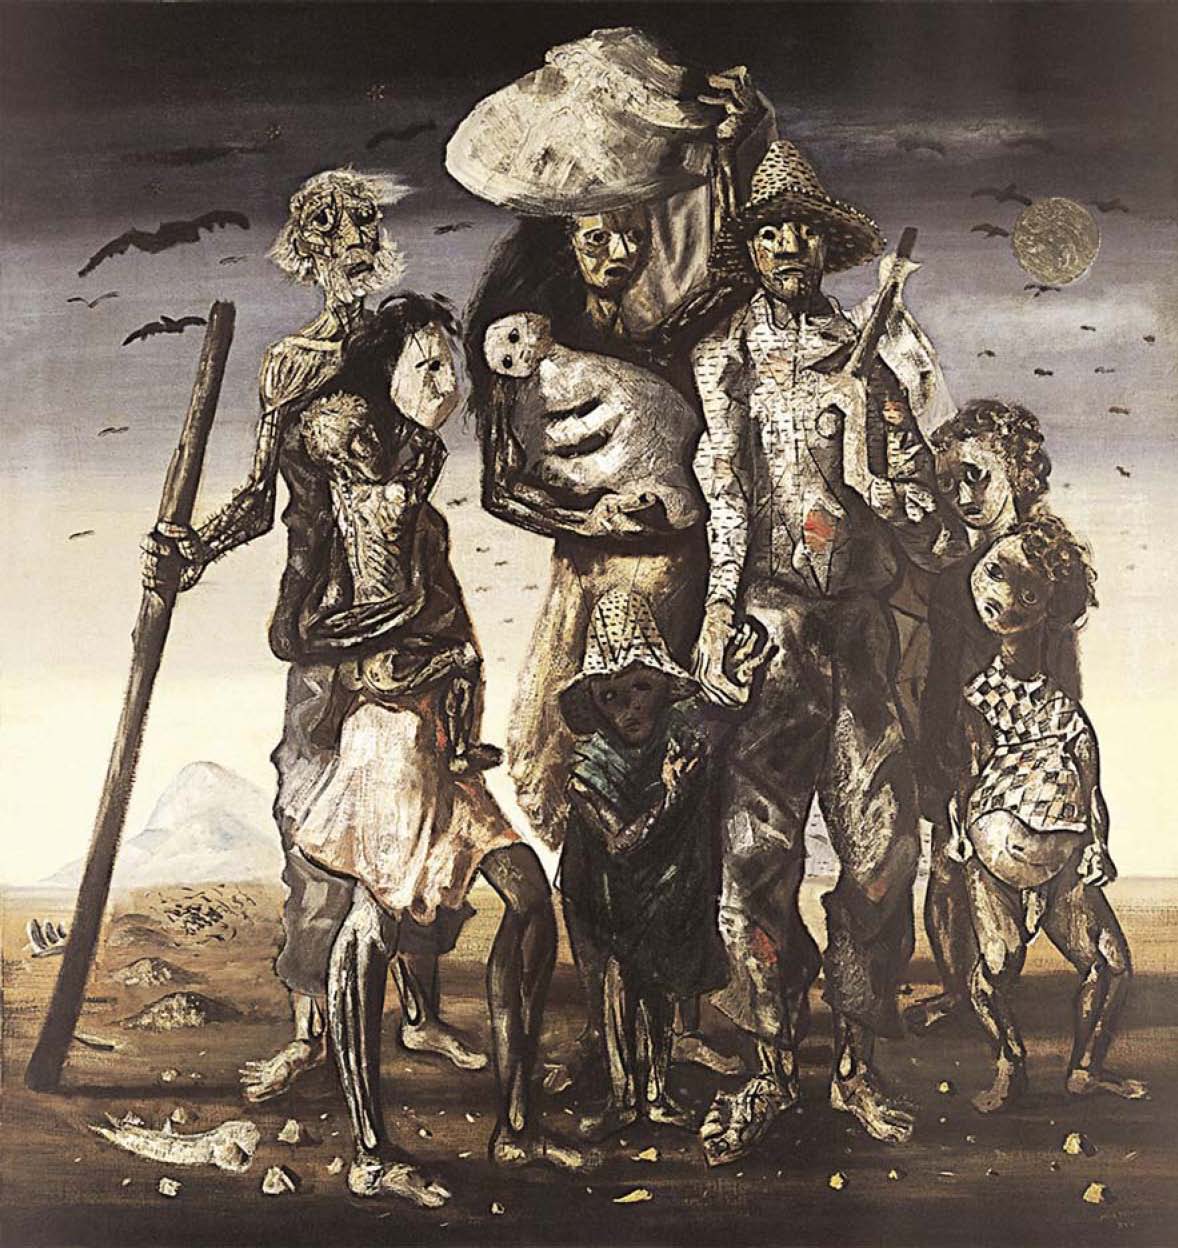 Quadro 'Os Retirantes', pintado em 1944 por Cândido Portinari retrata a fome dos nordestinos. (Reprodução)